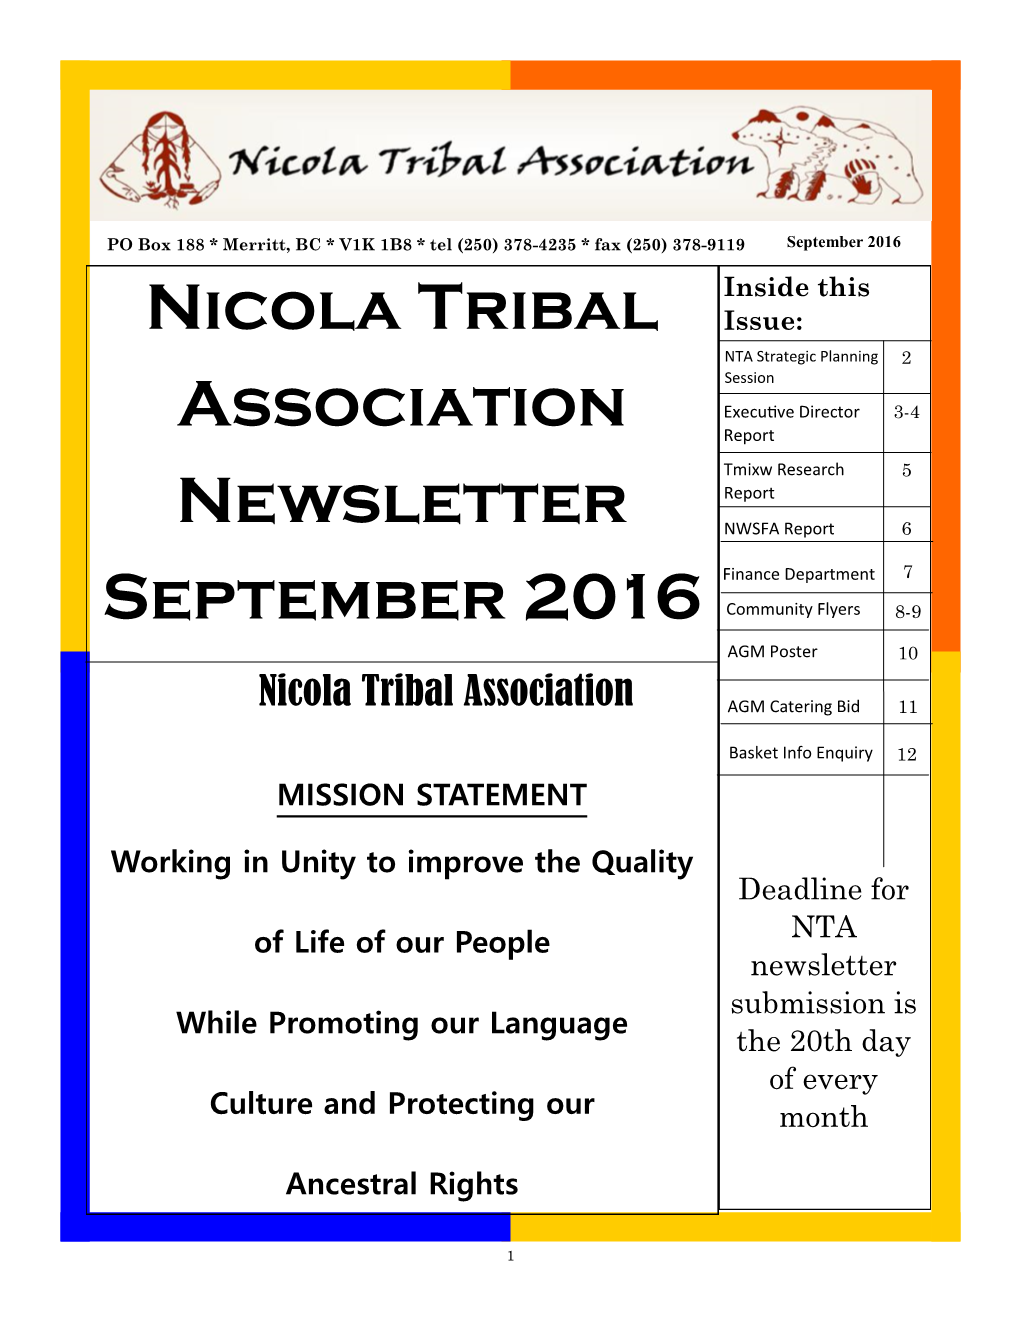 Nicola Tribal Association Newsletter September 2016